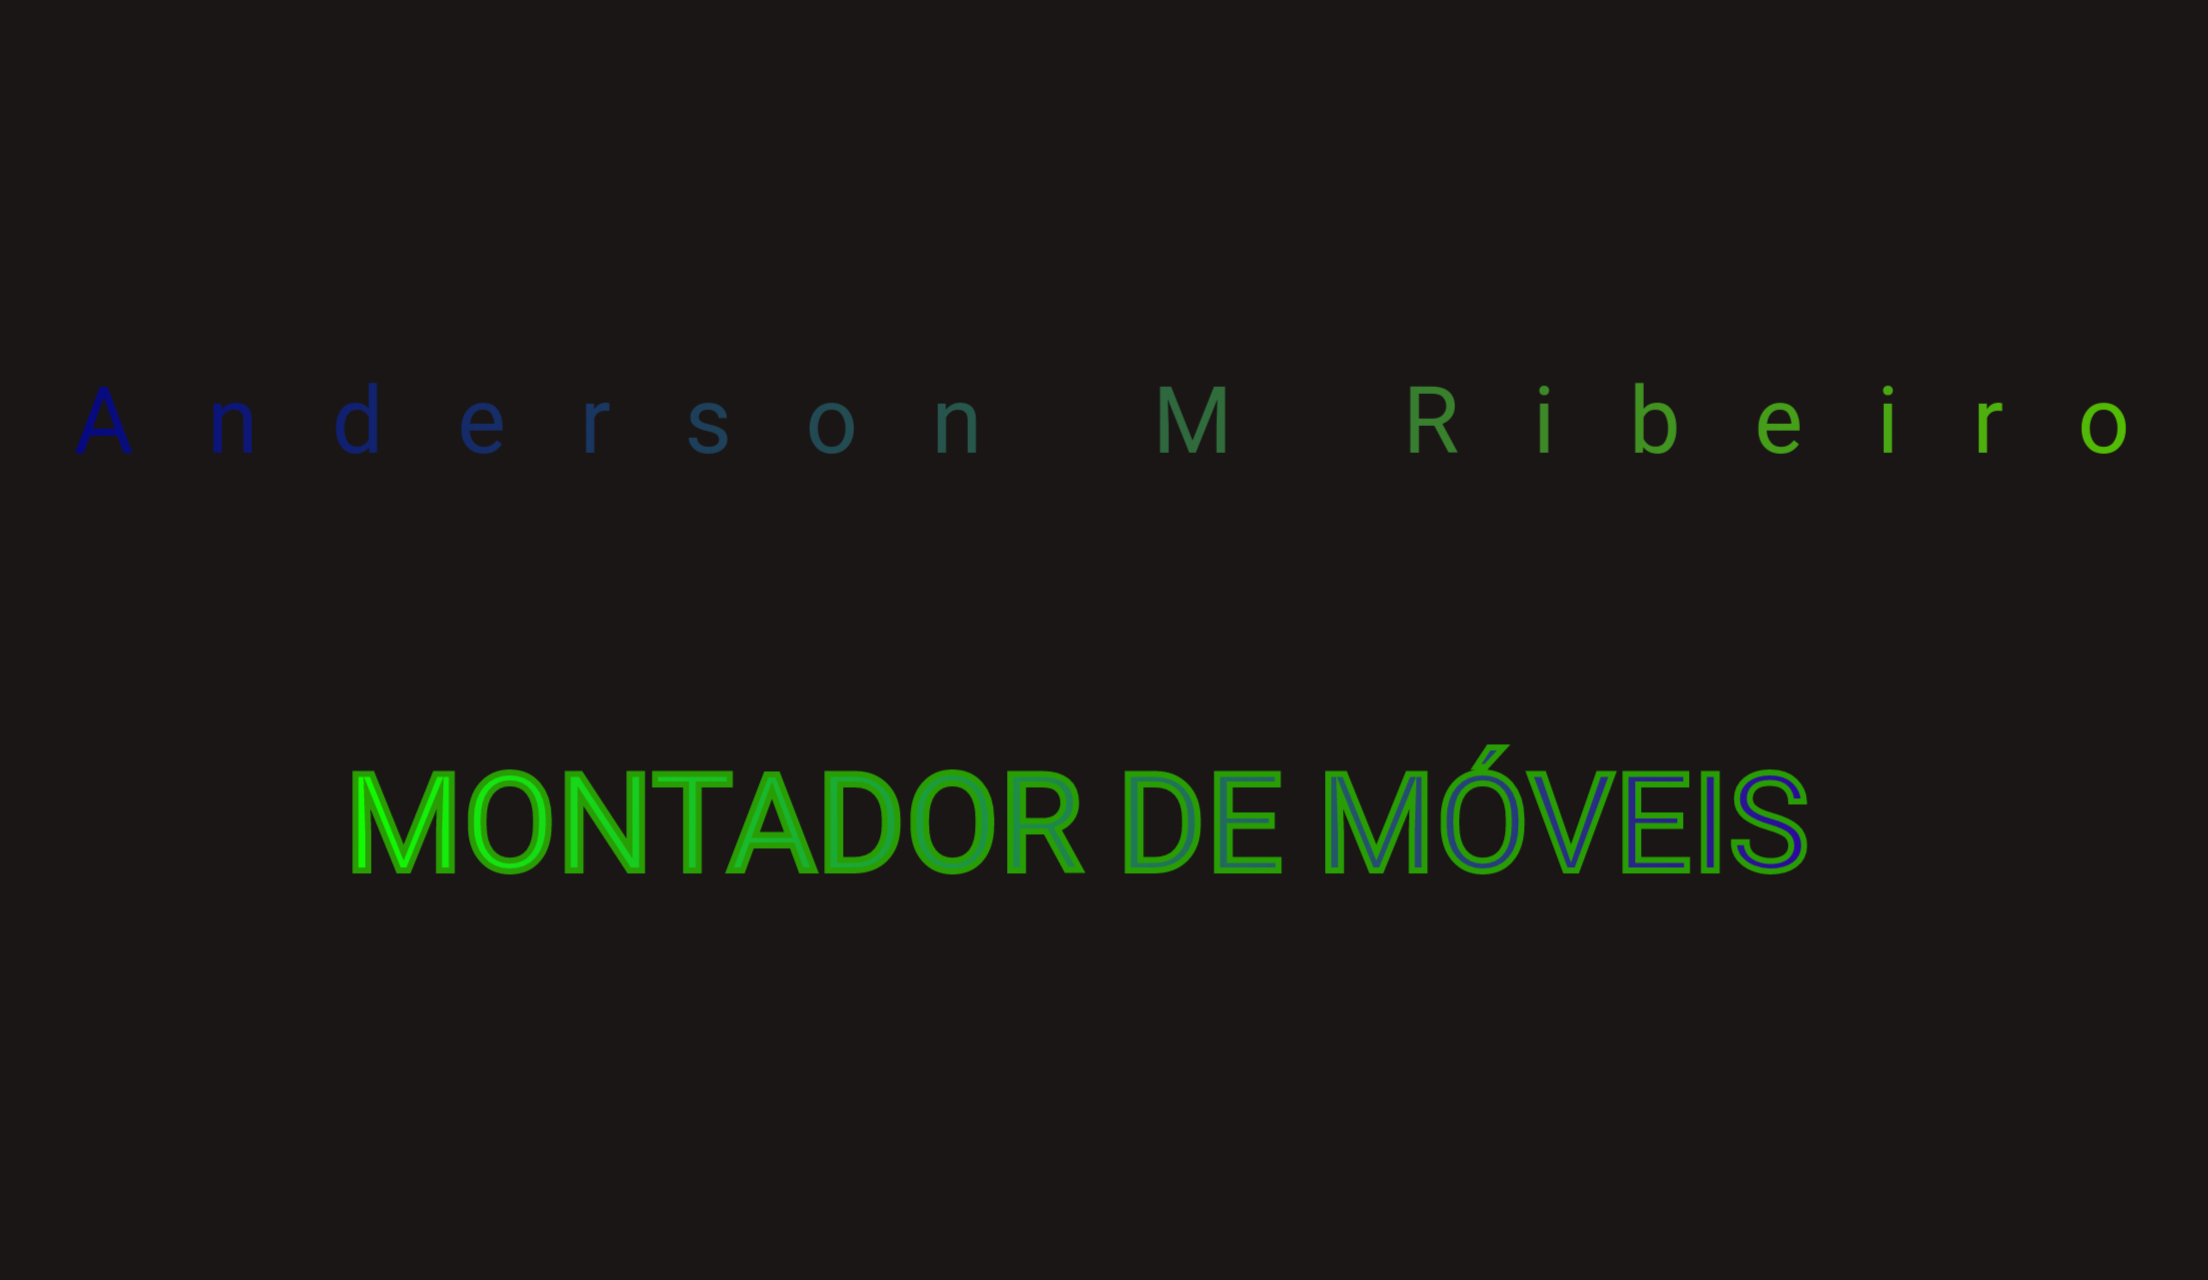 on MM Ribeiro

MONTADOR DE MOVEIS